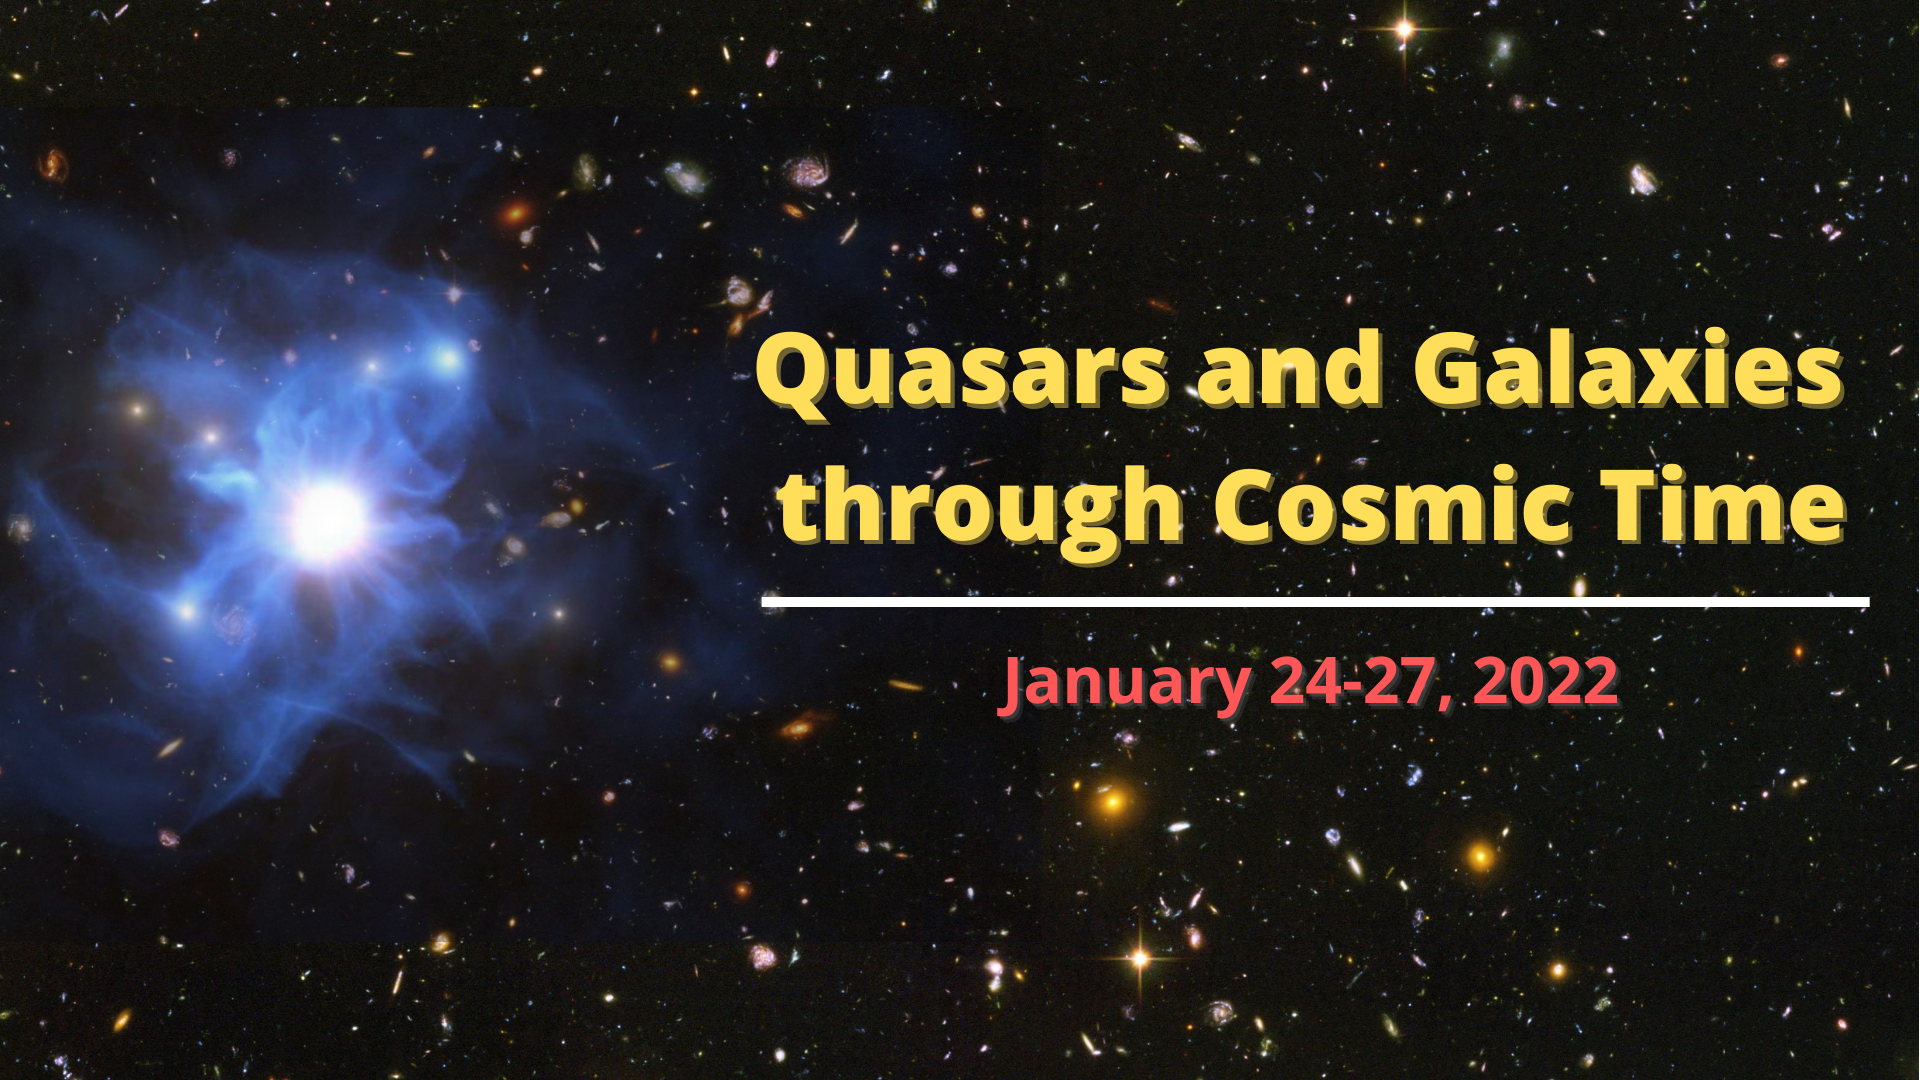 Conferencia Cuásares y Galaxias a través del Tiempo Cosmico